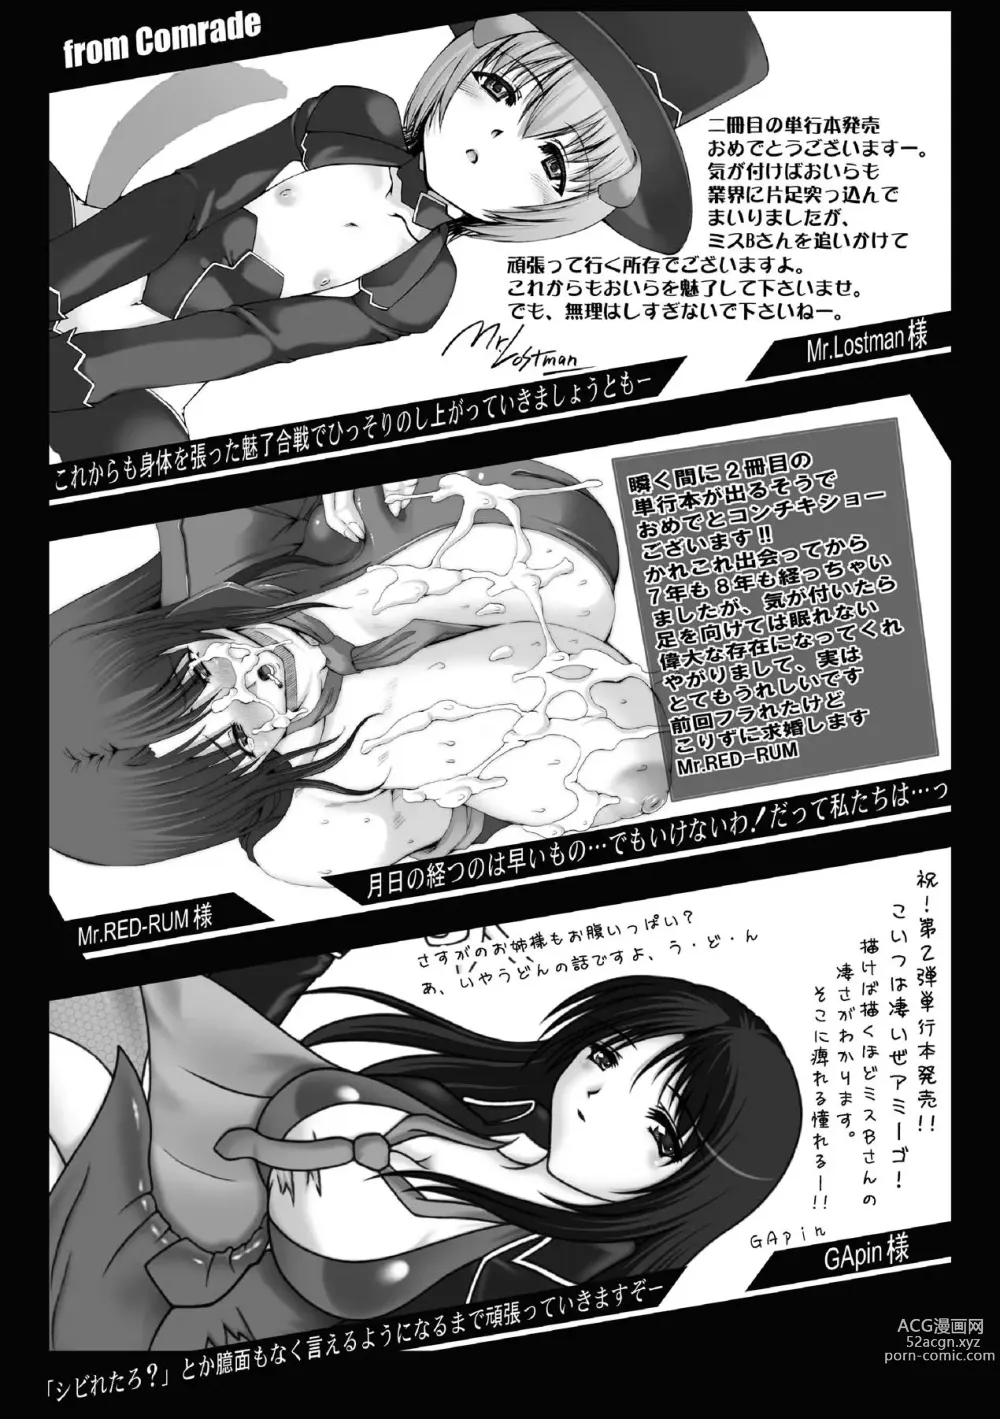 Page 159 of manga Feuerig